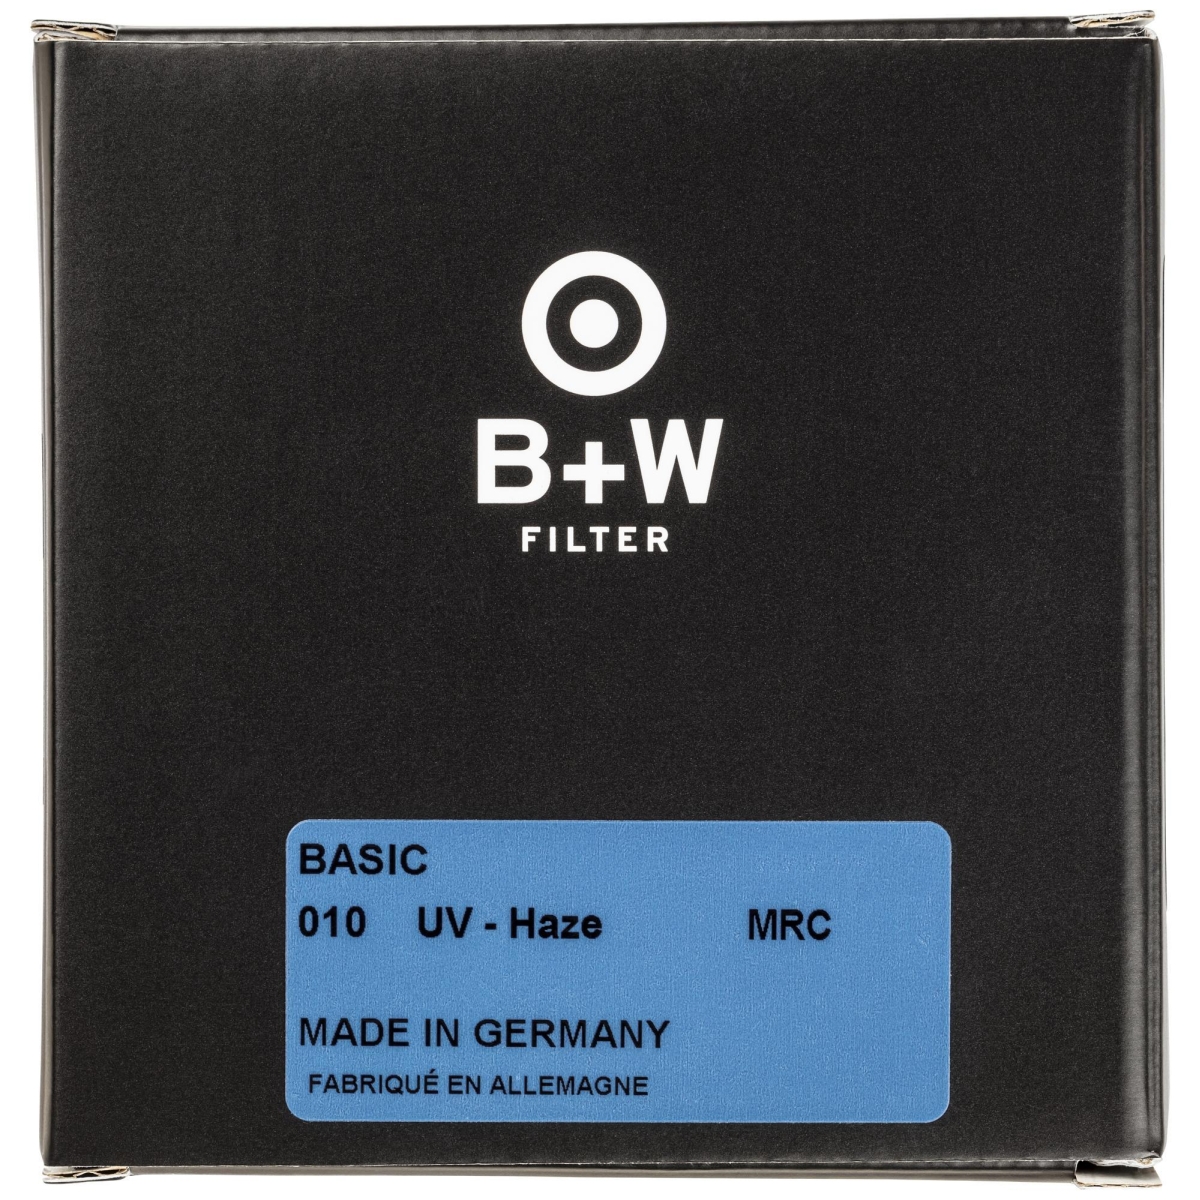 B+W UV 58 mm MRC Basic